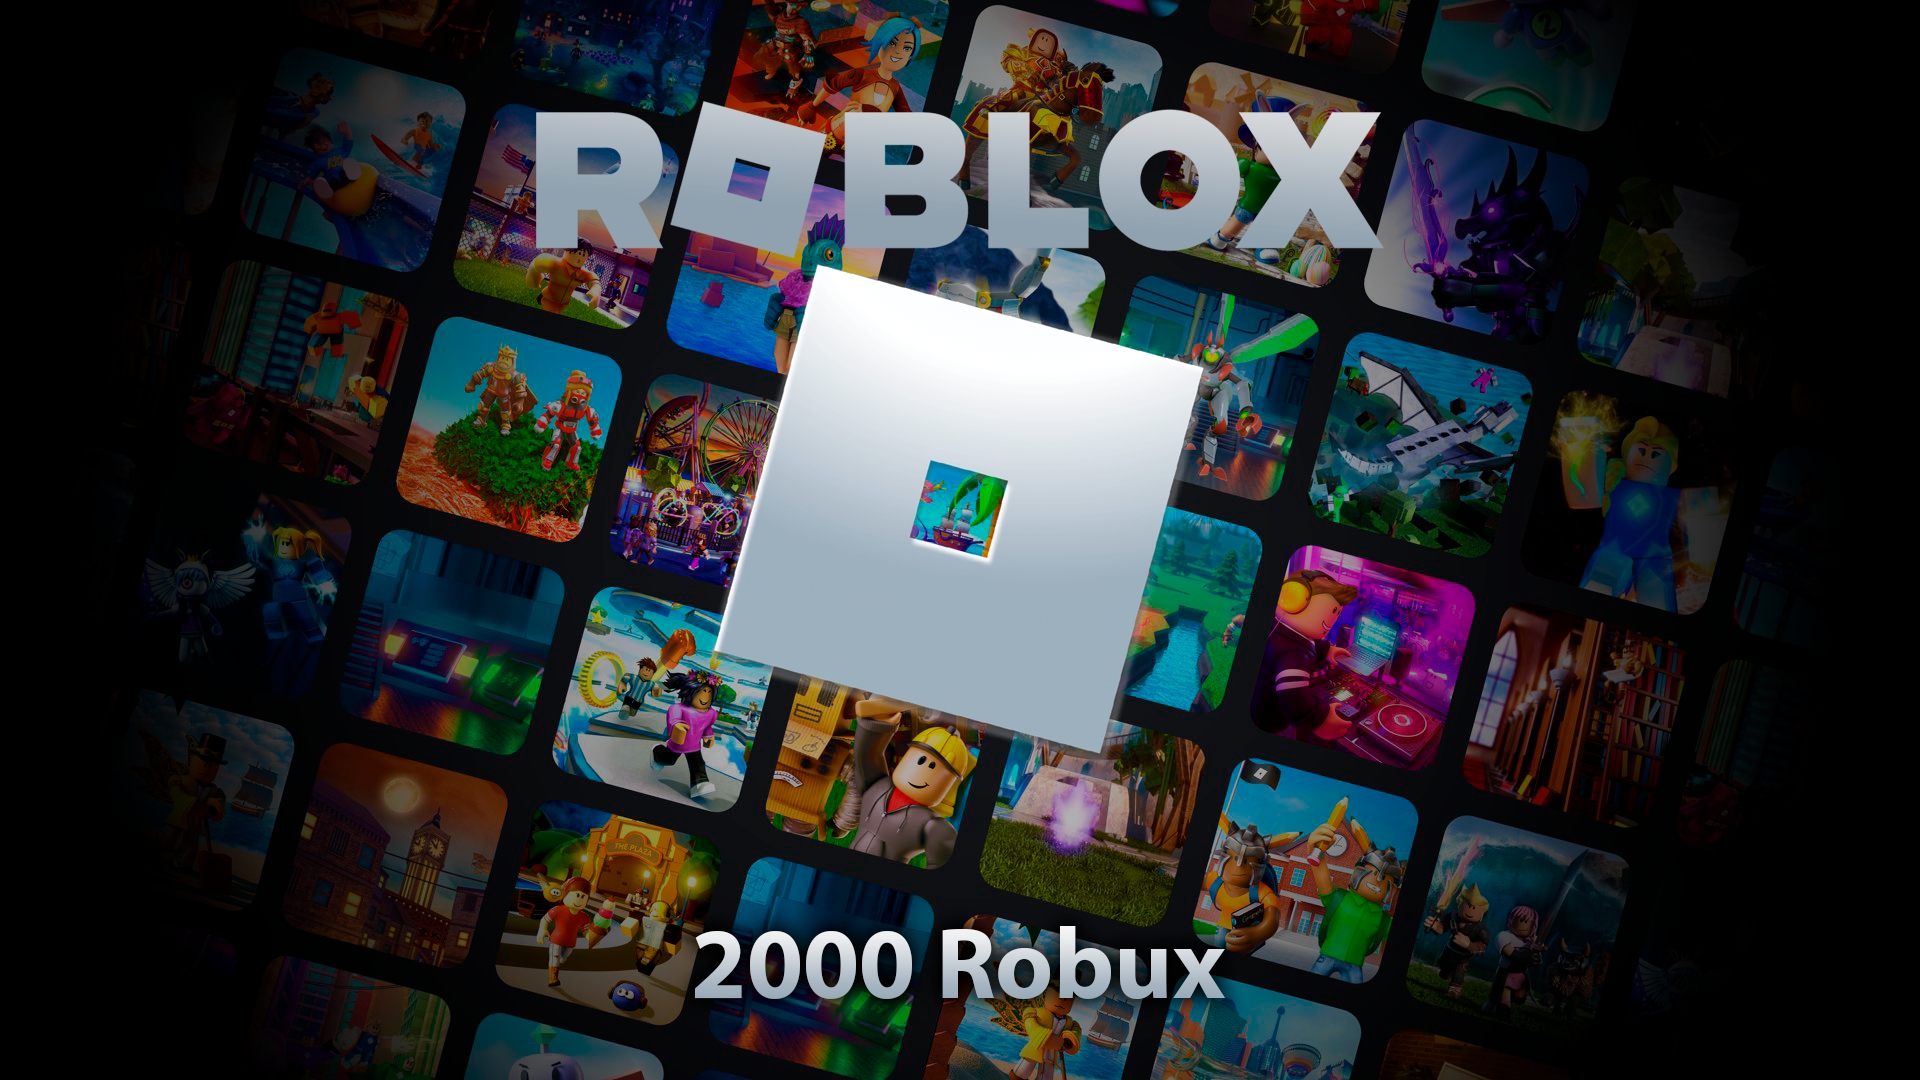 Roblox | 2000 Robux Barato via Gamepass (Cubro a